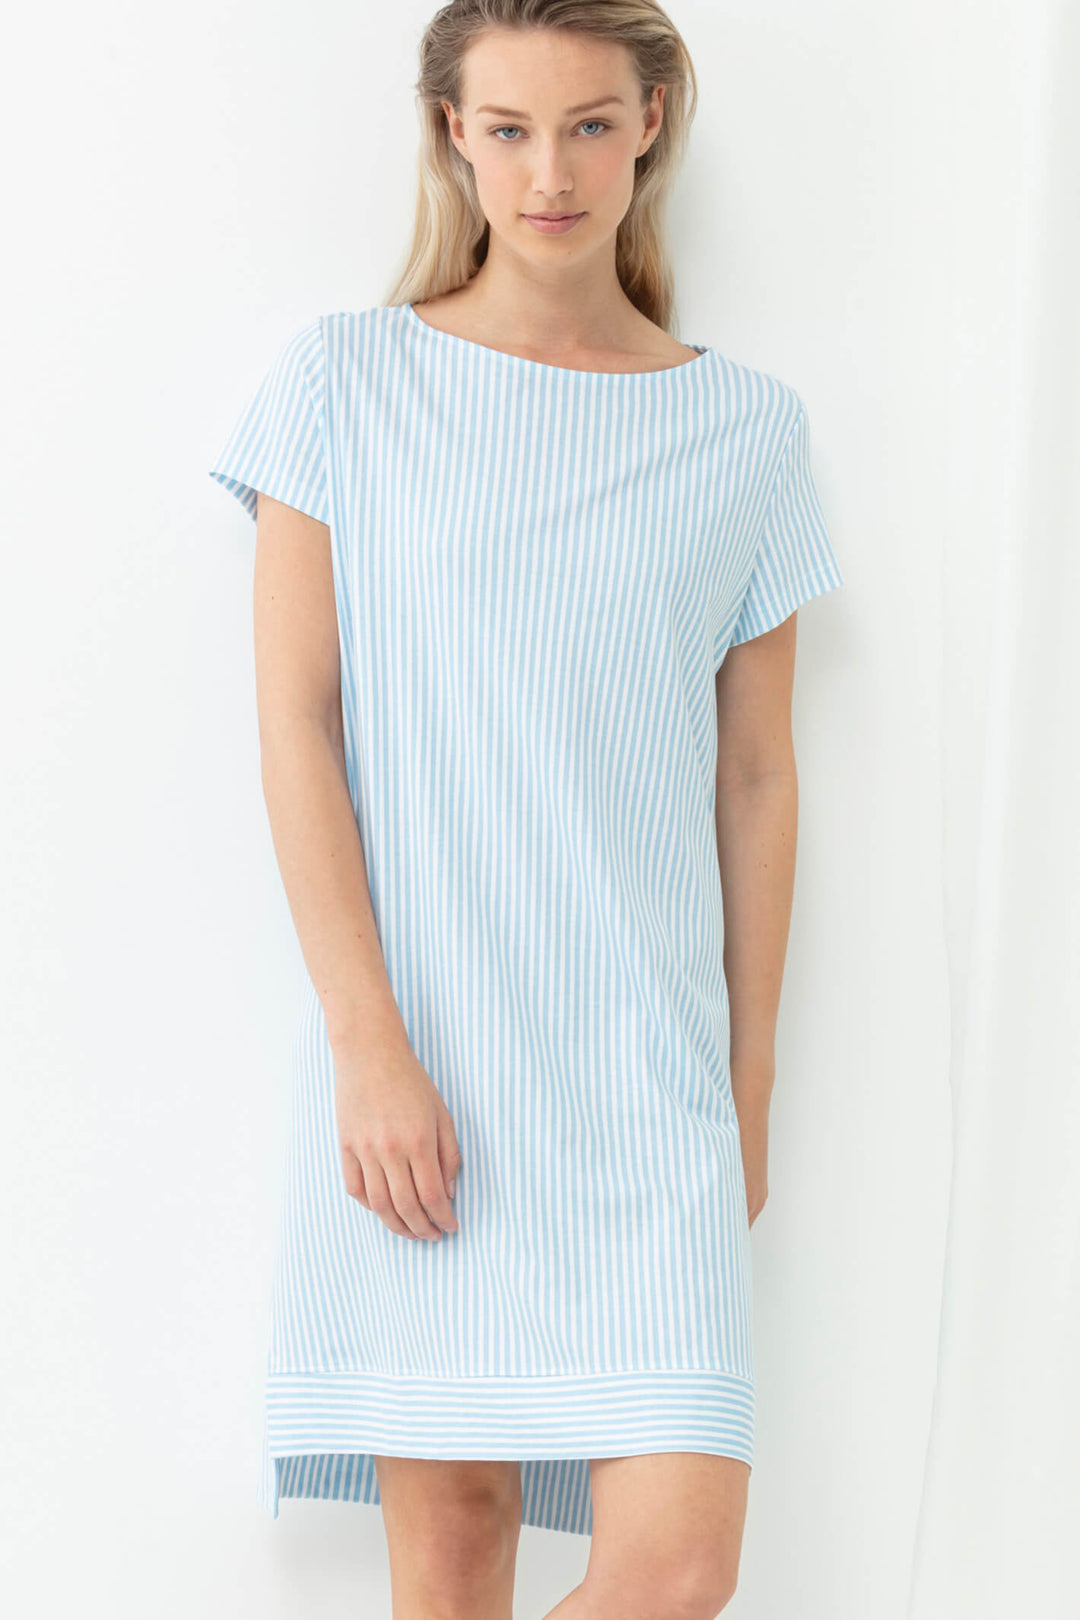 Mey 17218 309 Dream Blue Stripe Sleepsation Nightshirt - Shirley Allum Boutique